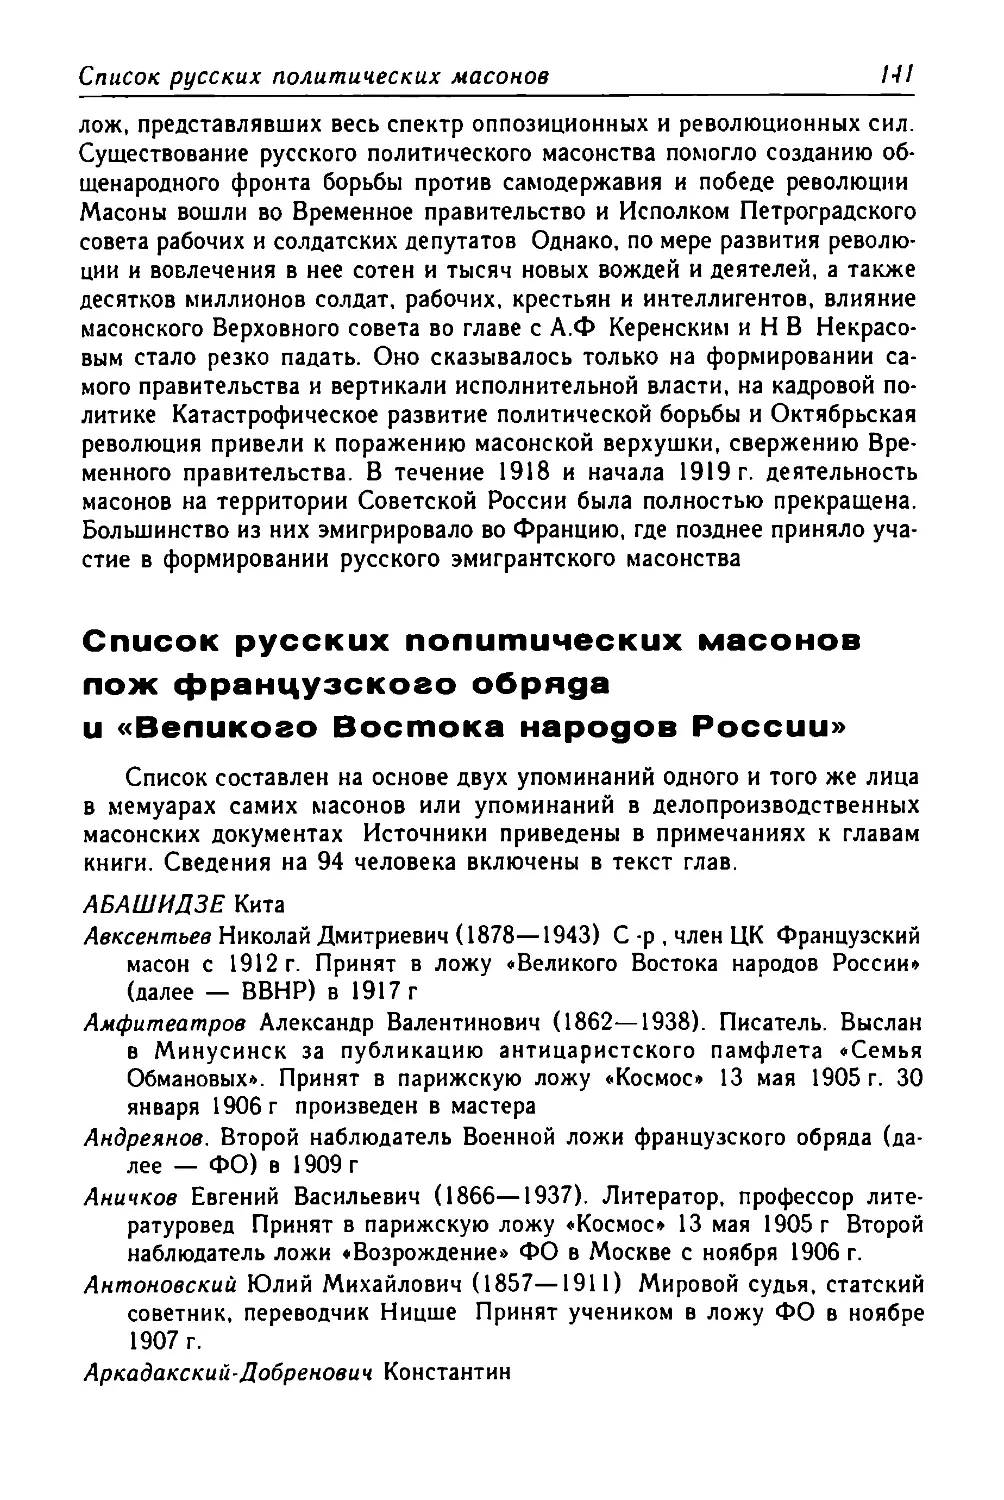 Список русских политических масонов лож французского обряда и «Великого Востока народов России»